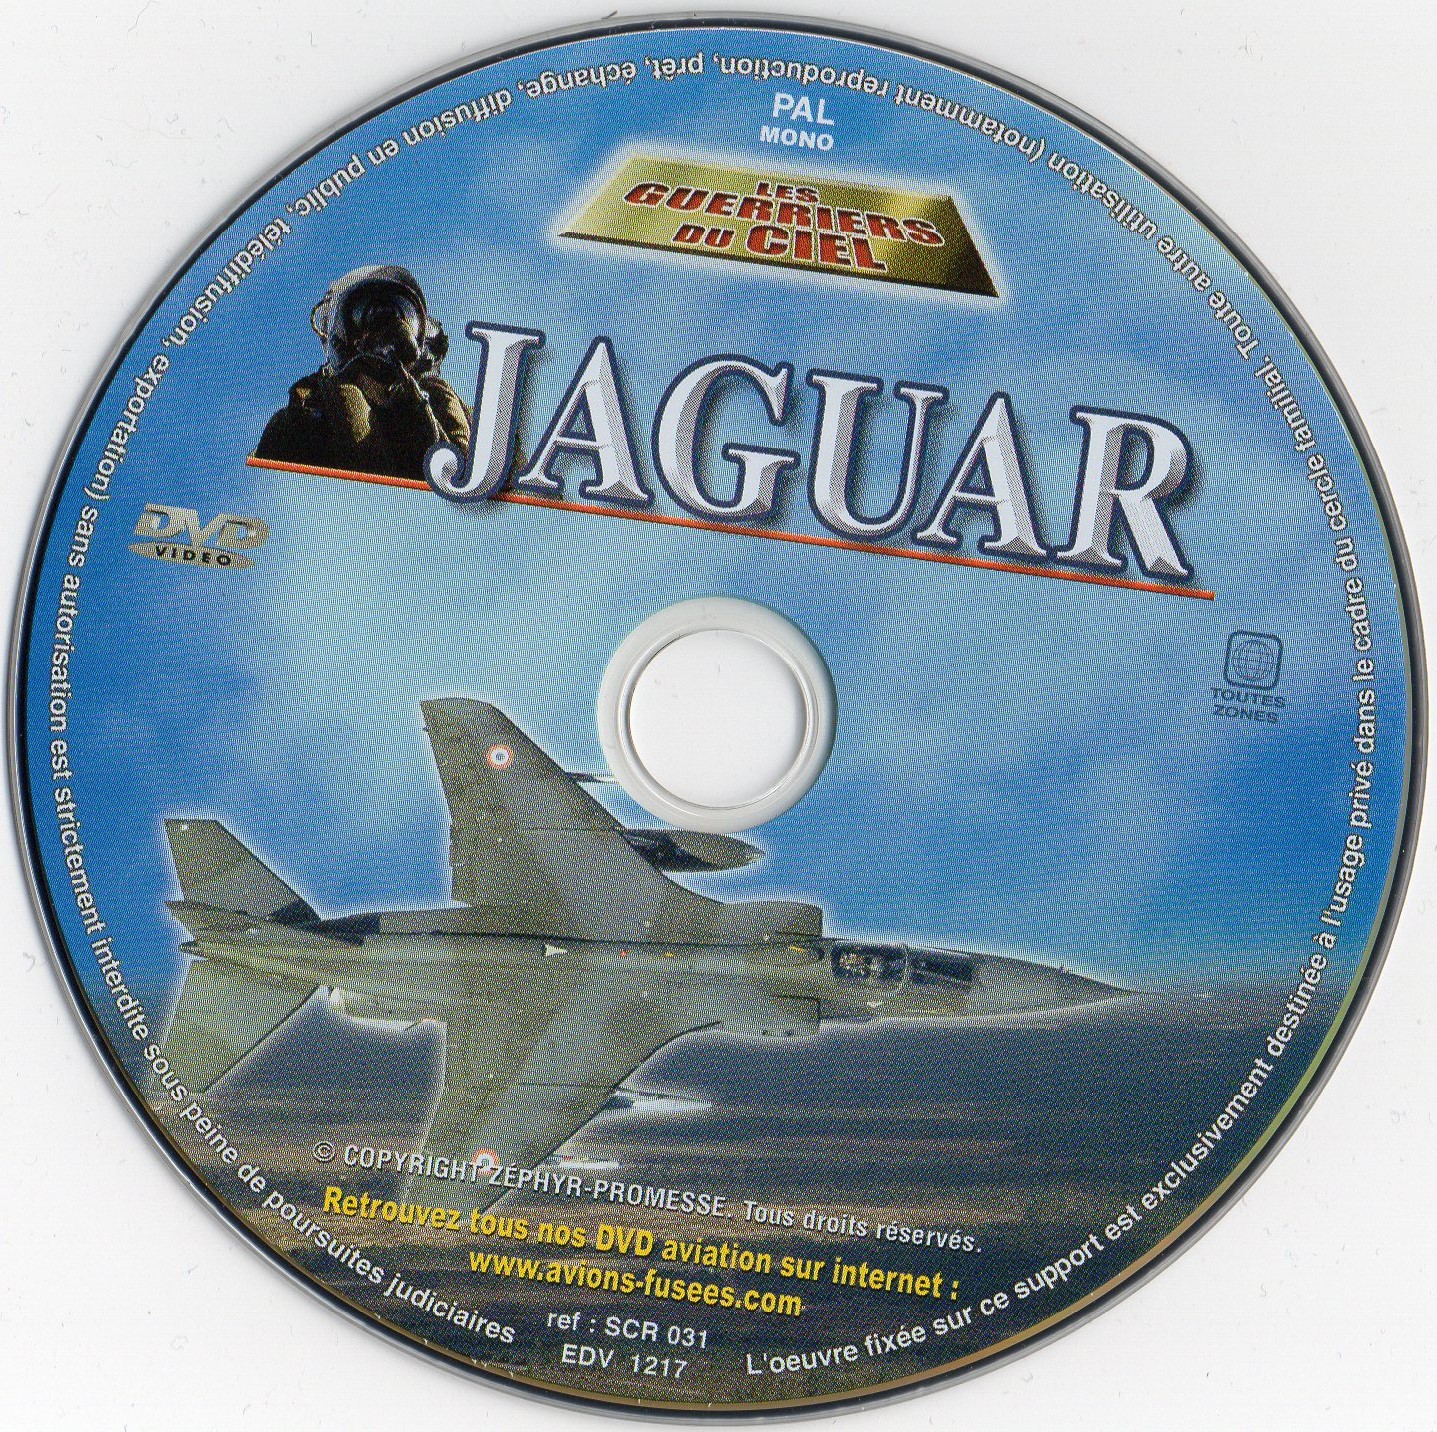 Les guerriers du ciel - Jaguar